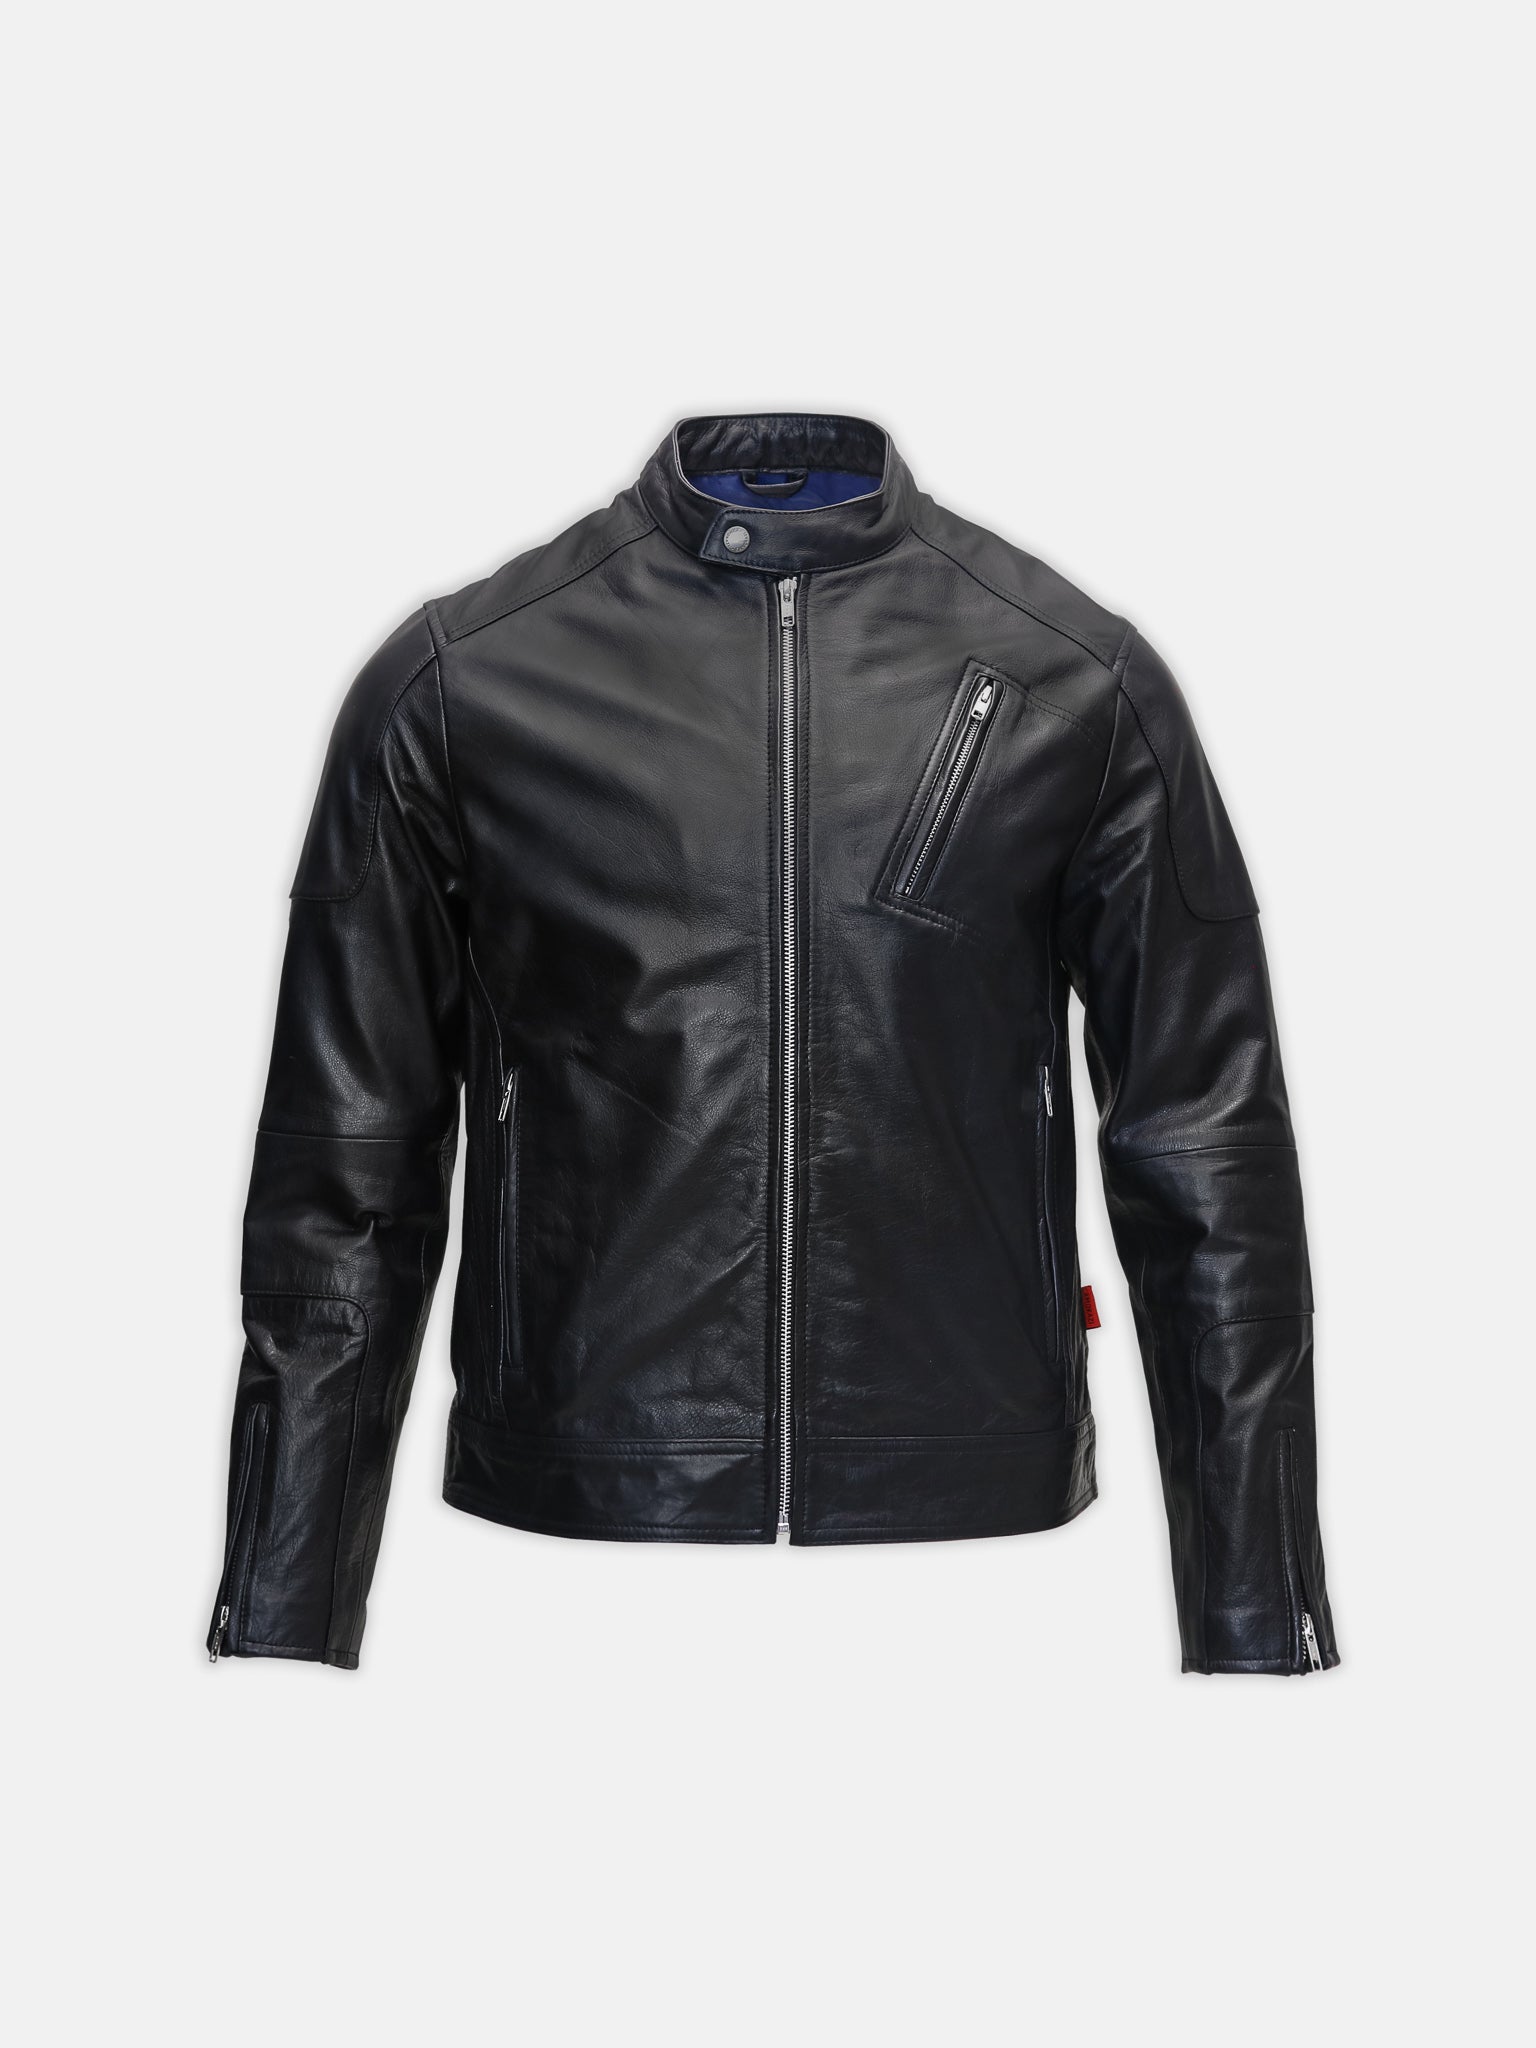 Leather racer jacket biker